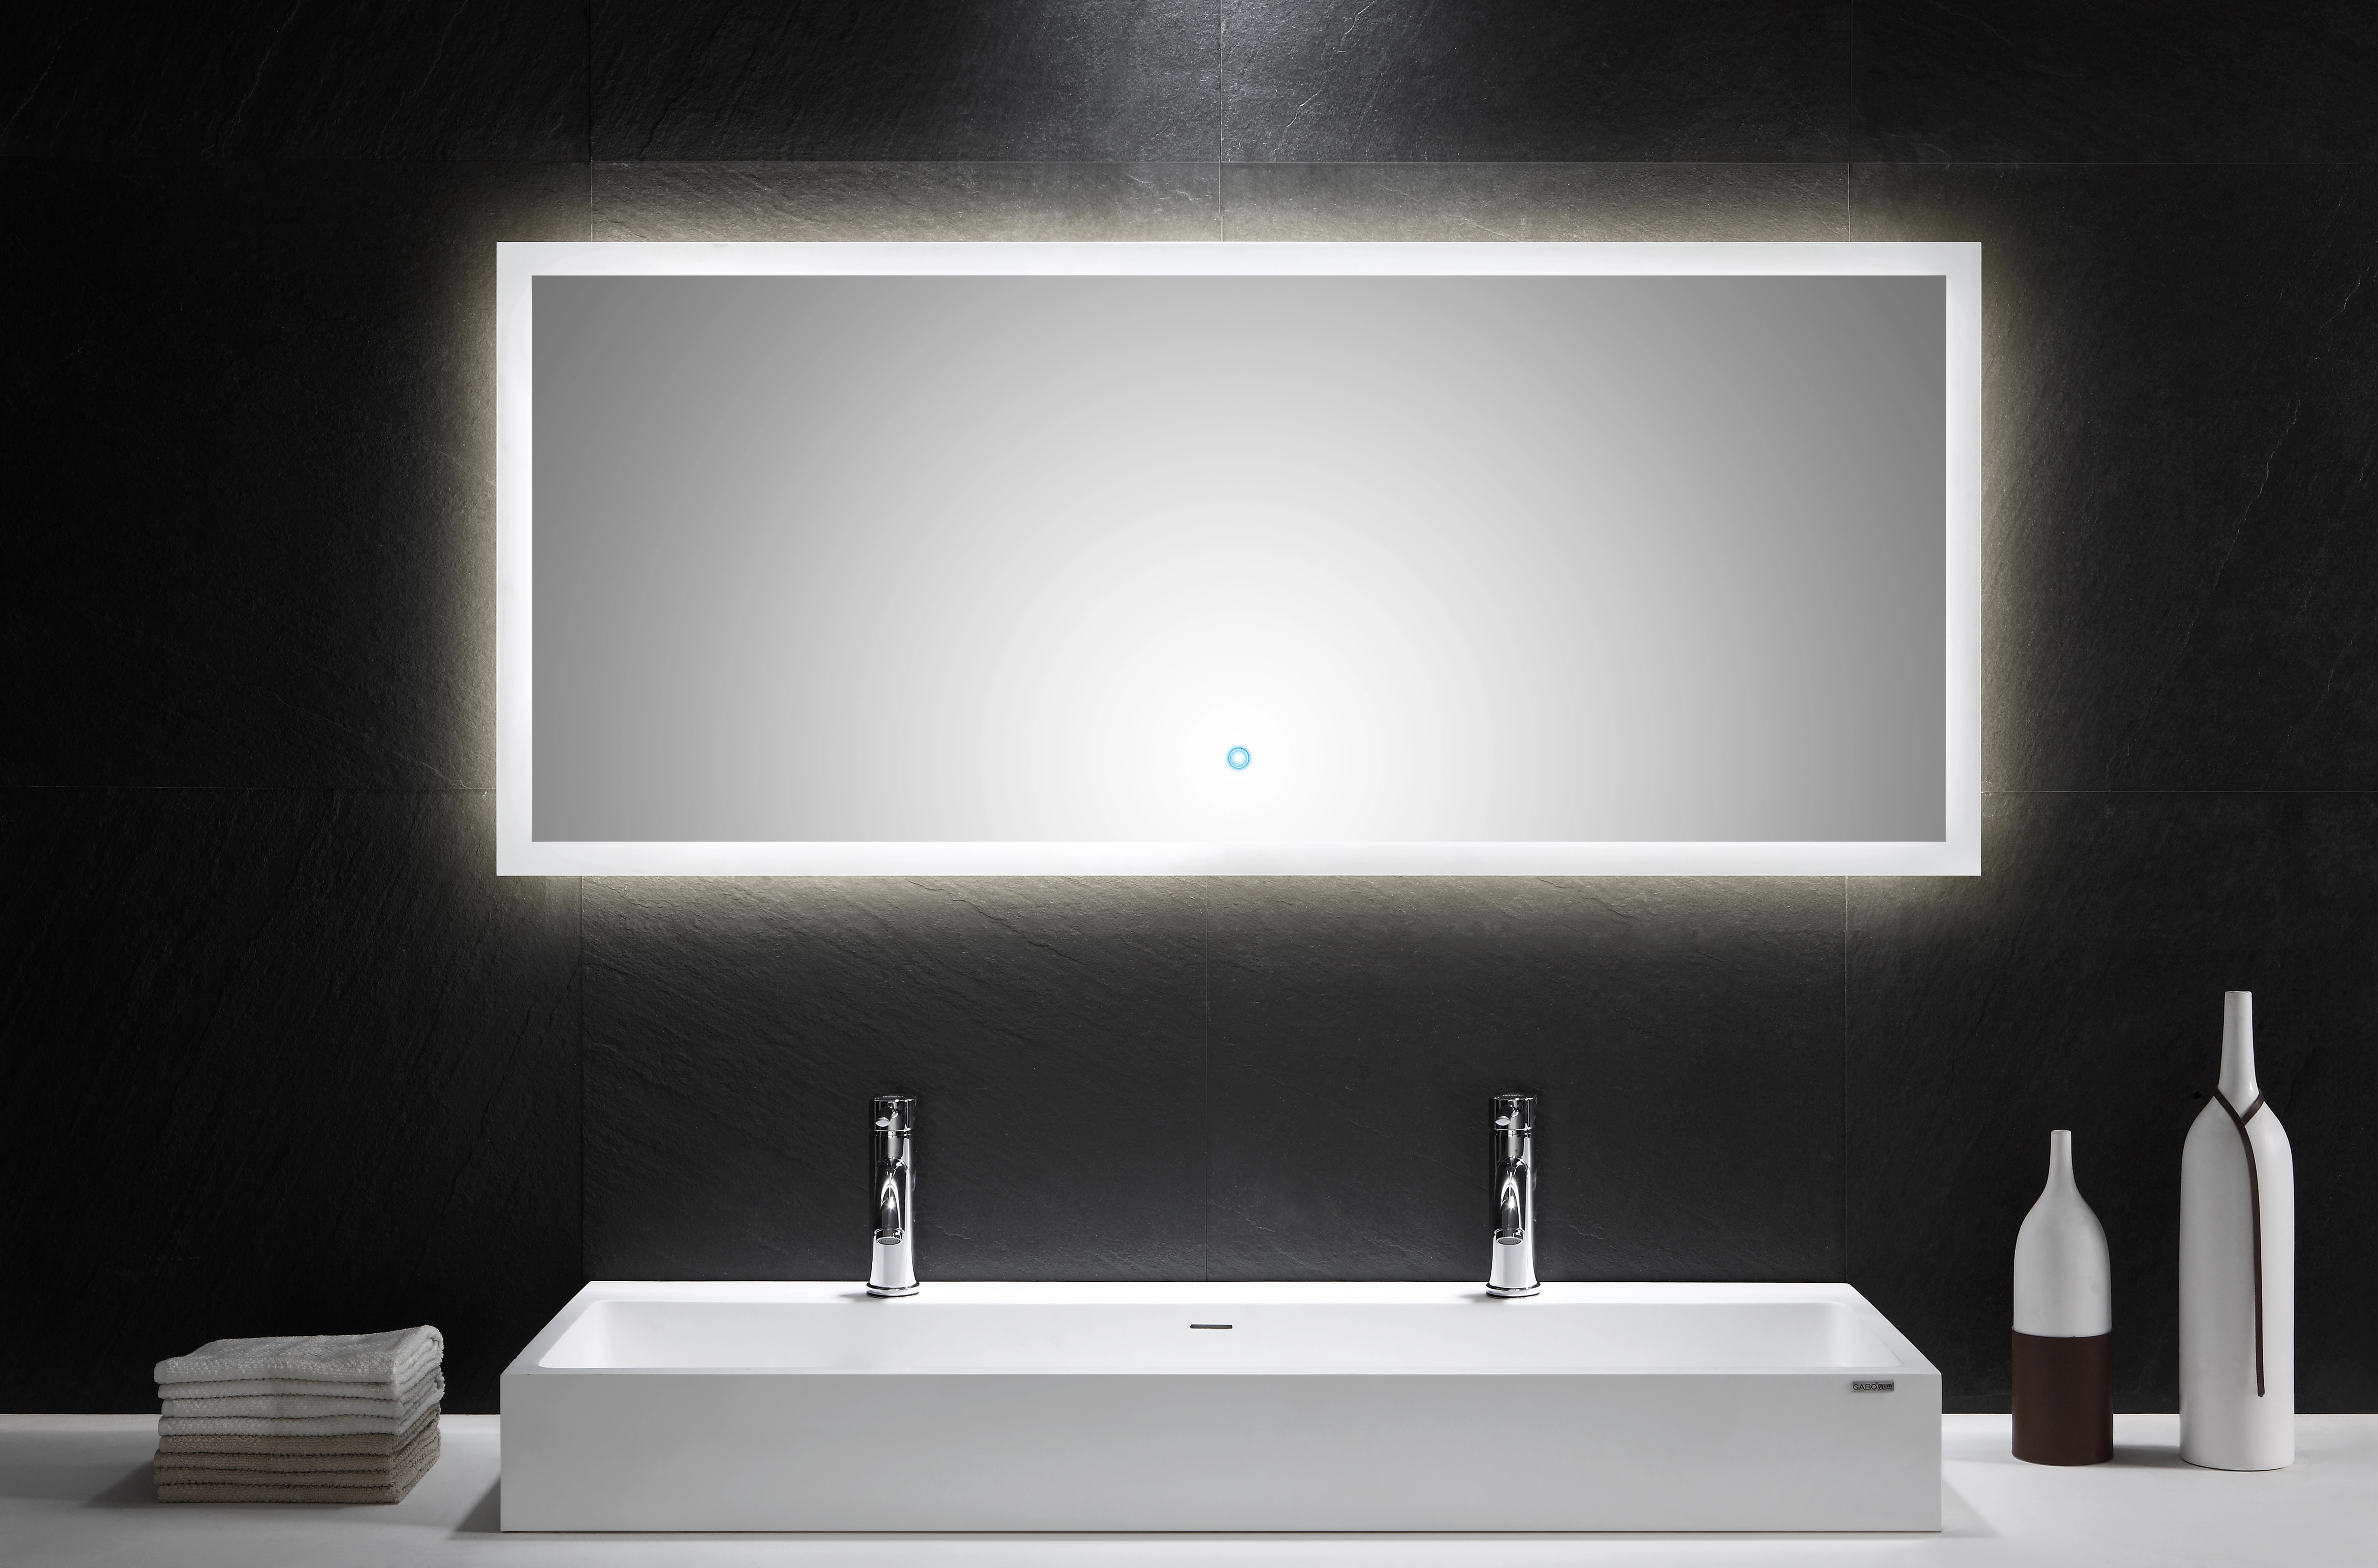 Baldur S3 LED Spiegel 60x80cm mit Touchfunktion - LuxNice